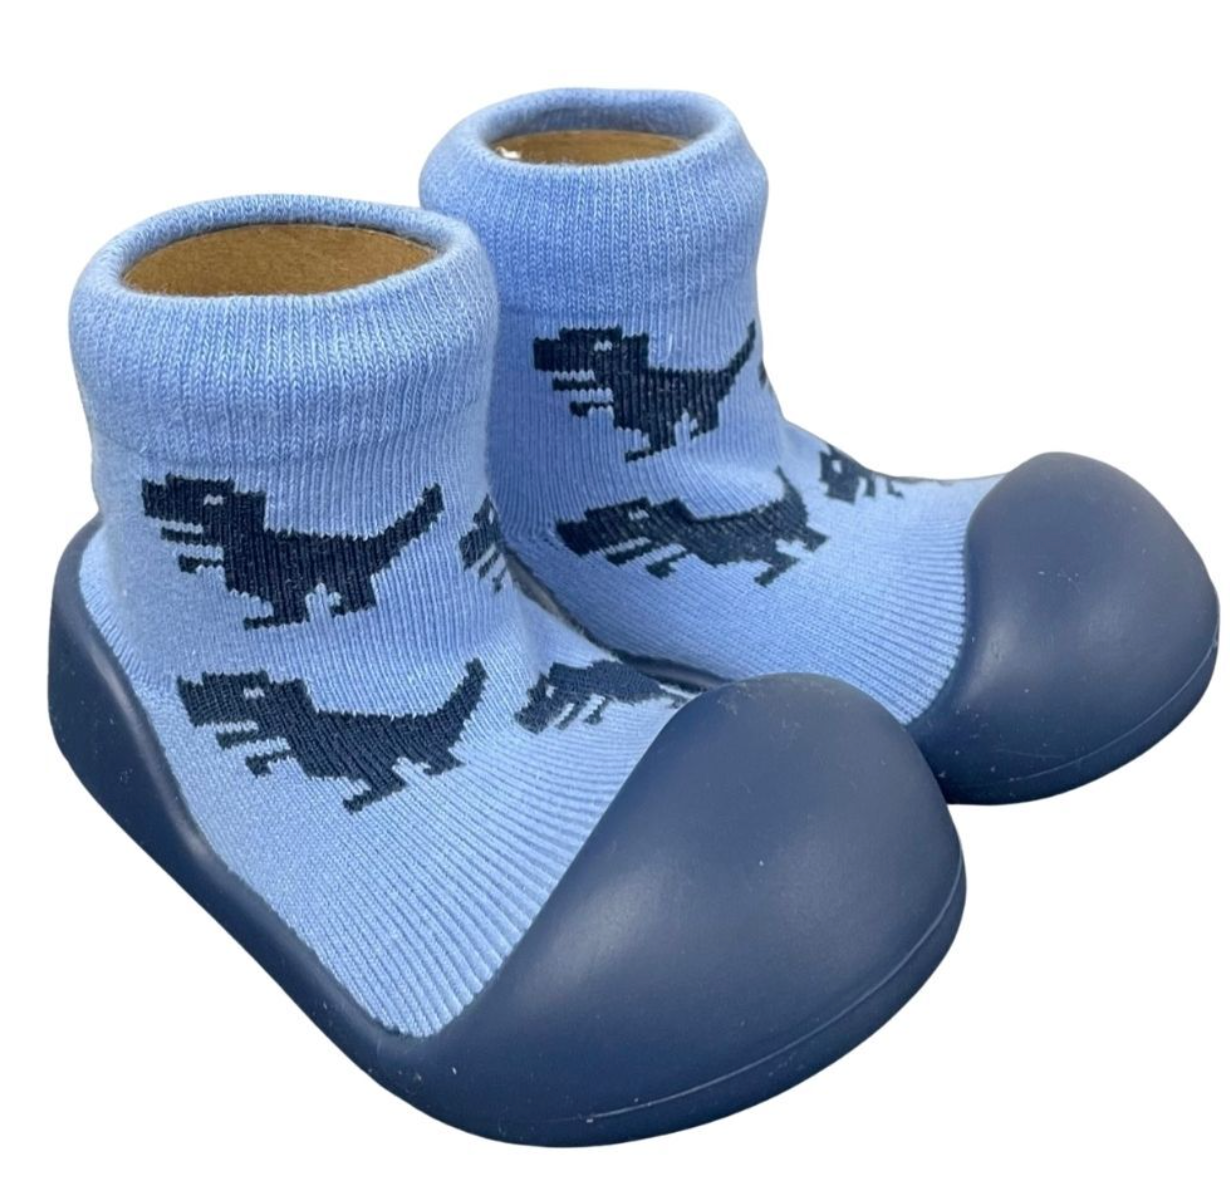 Dinosaur Rubber Soled Socks